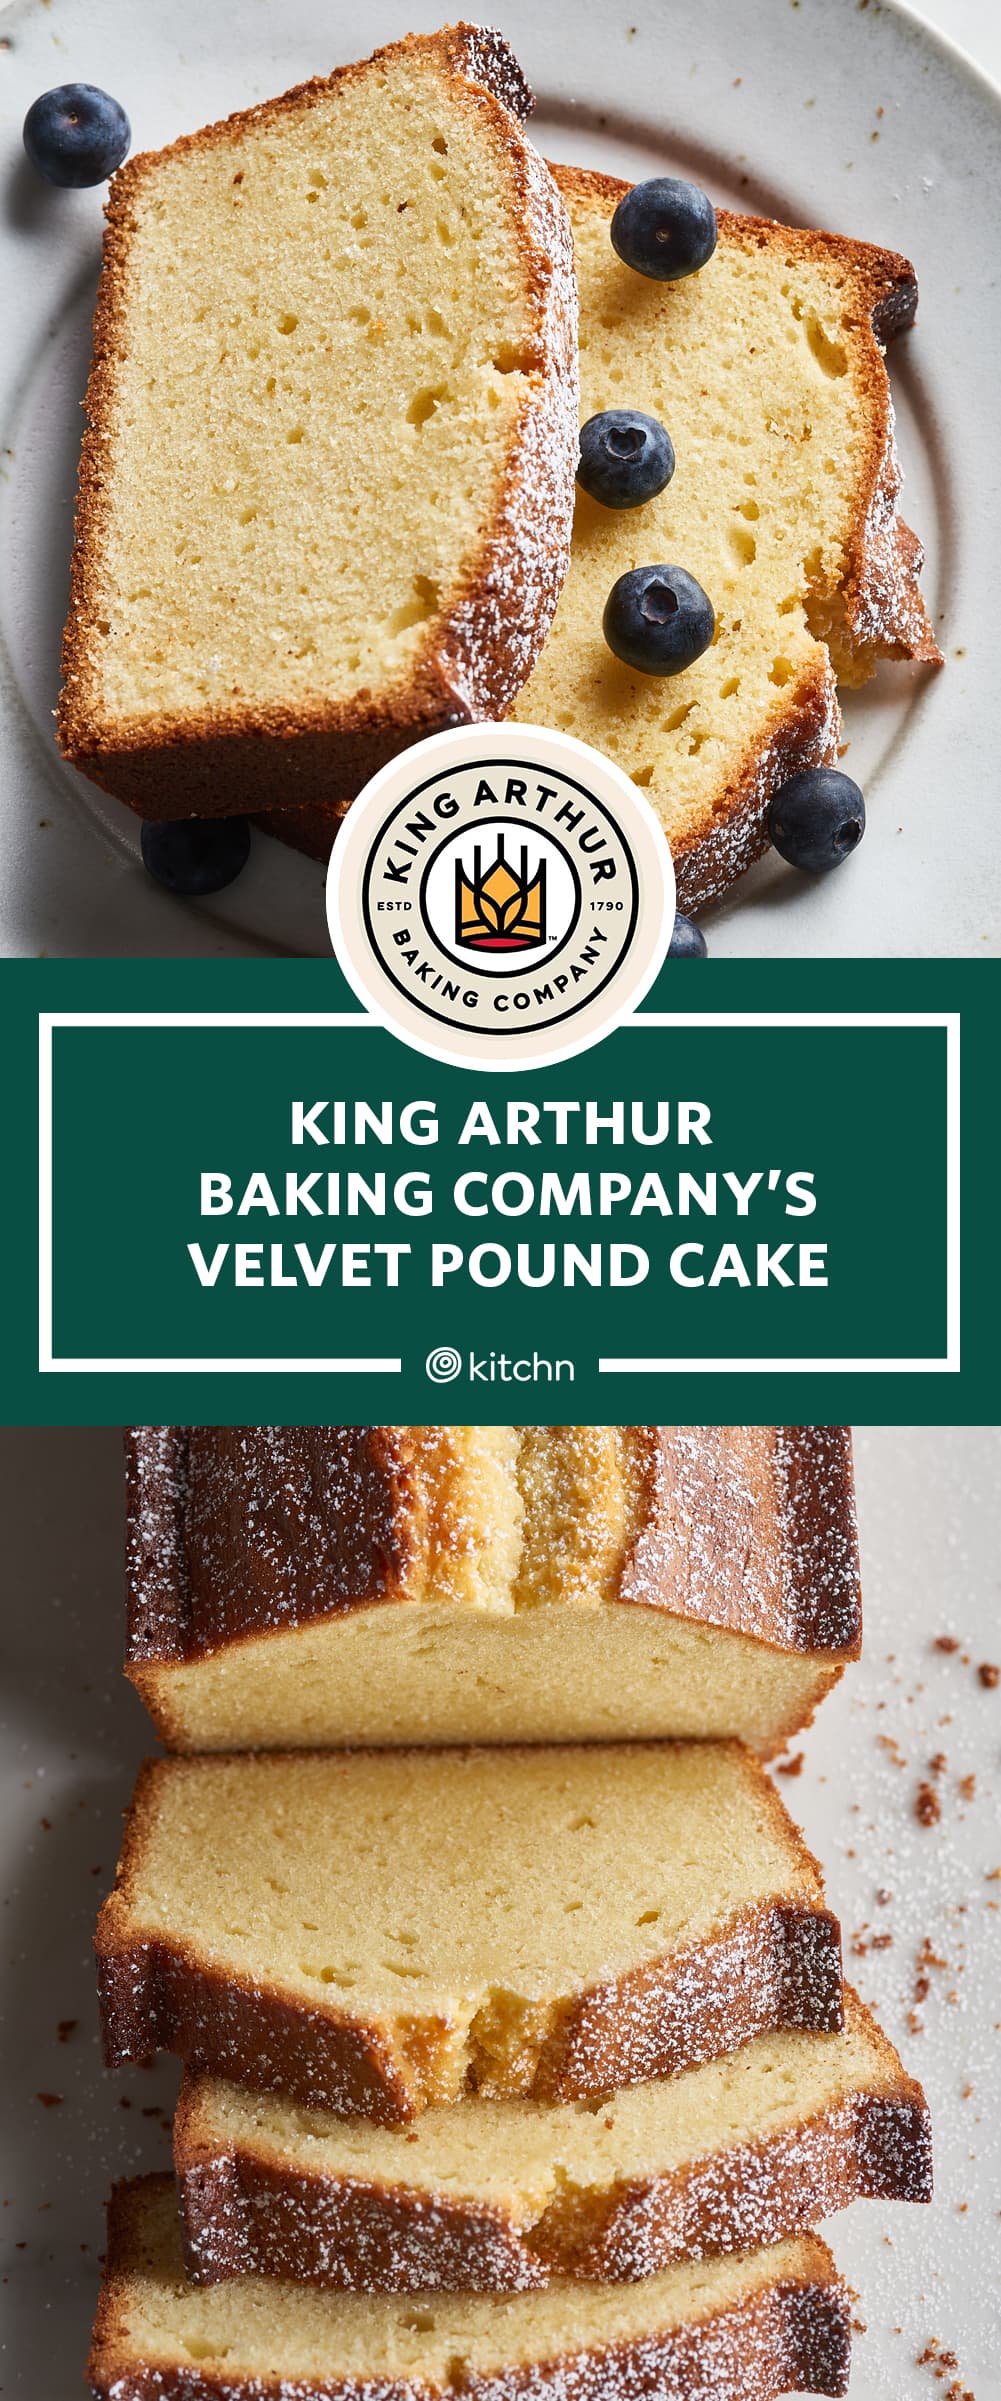 Savarin Cake Pan - King Arthur Baking Company